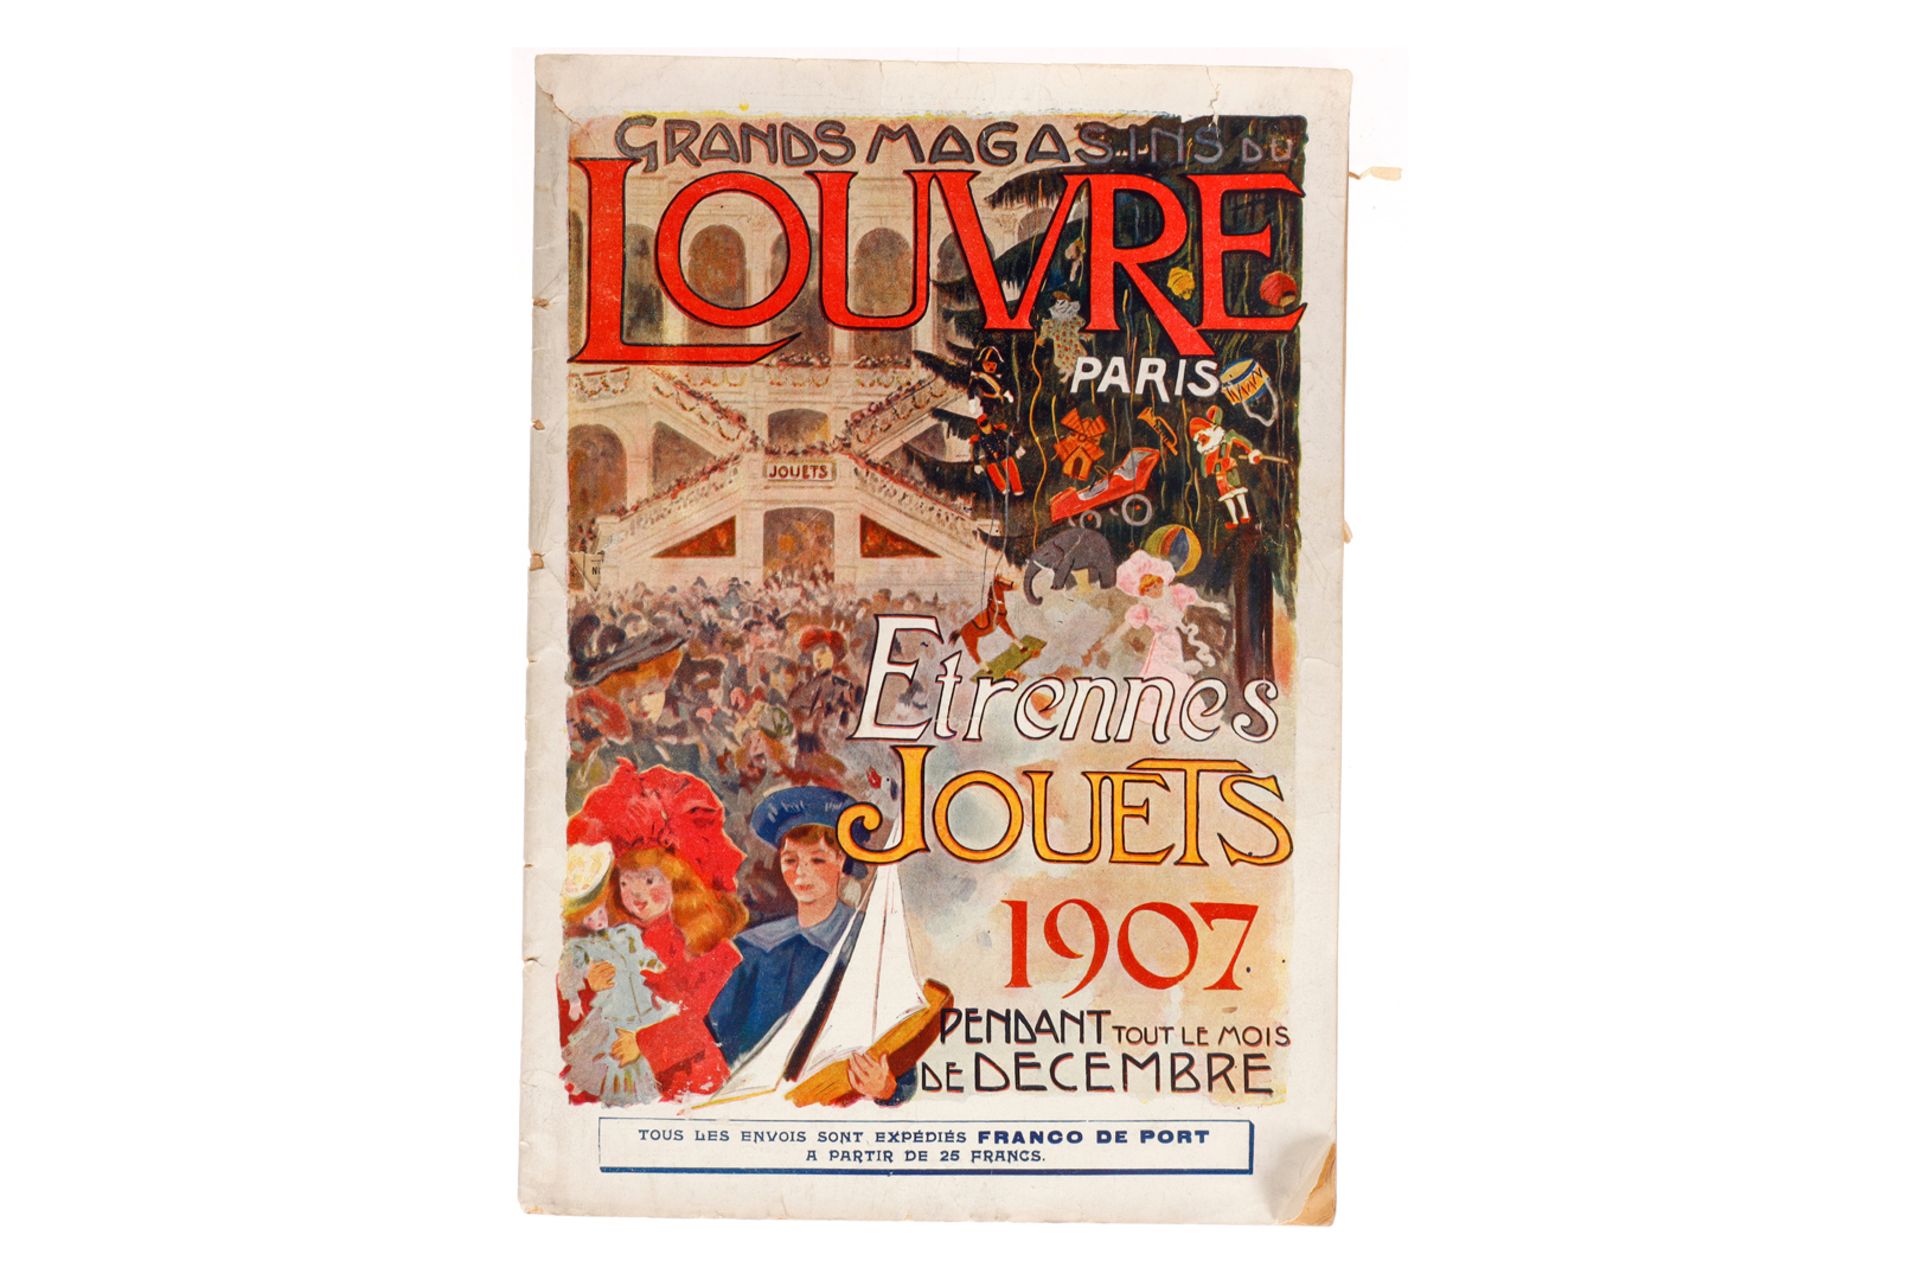 Spielzeugkatalog ”Grands Magasins du Louvre Paris”, 1907, französisch, mit Eisenbahn-, Blech und